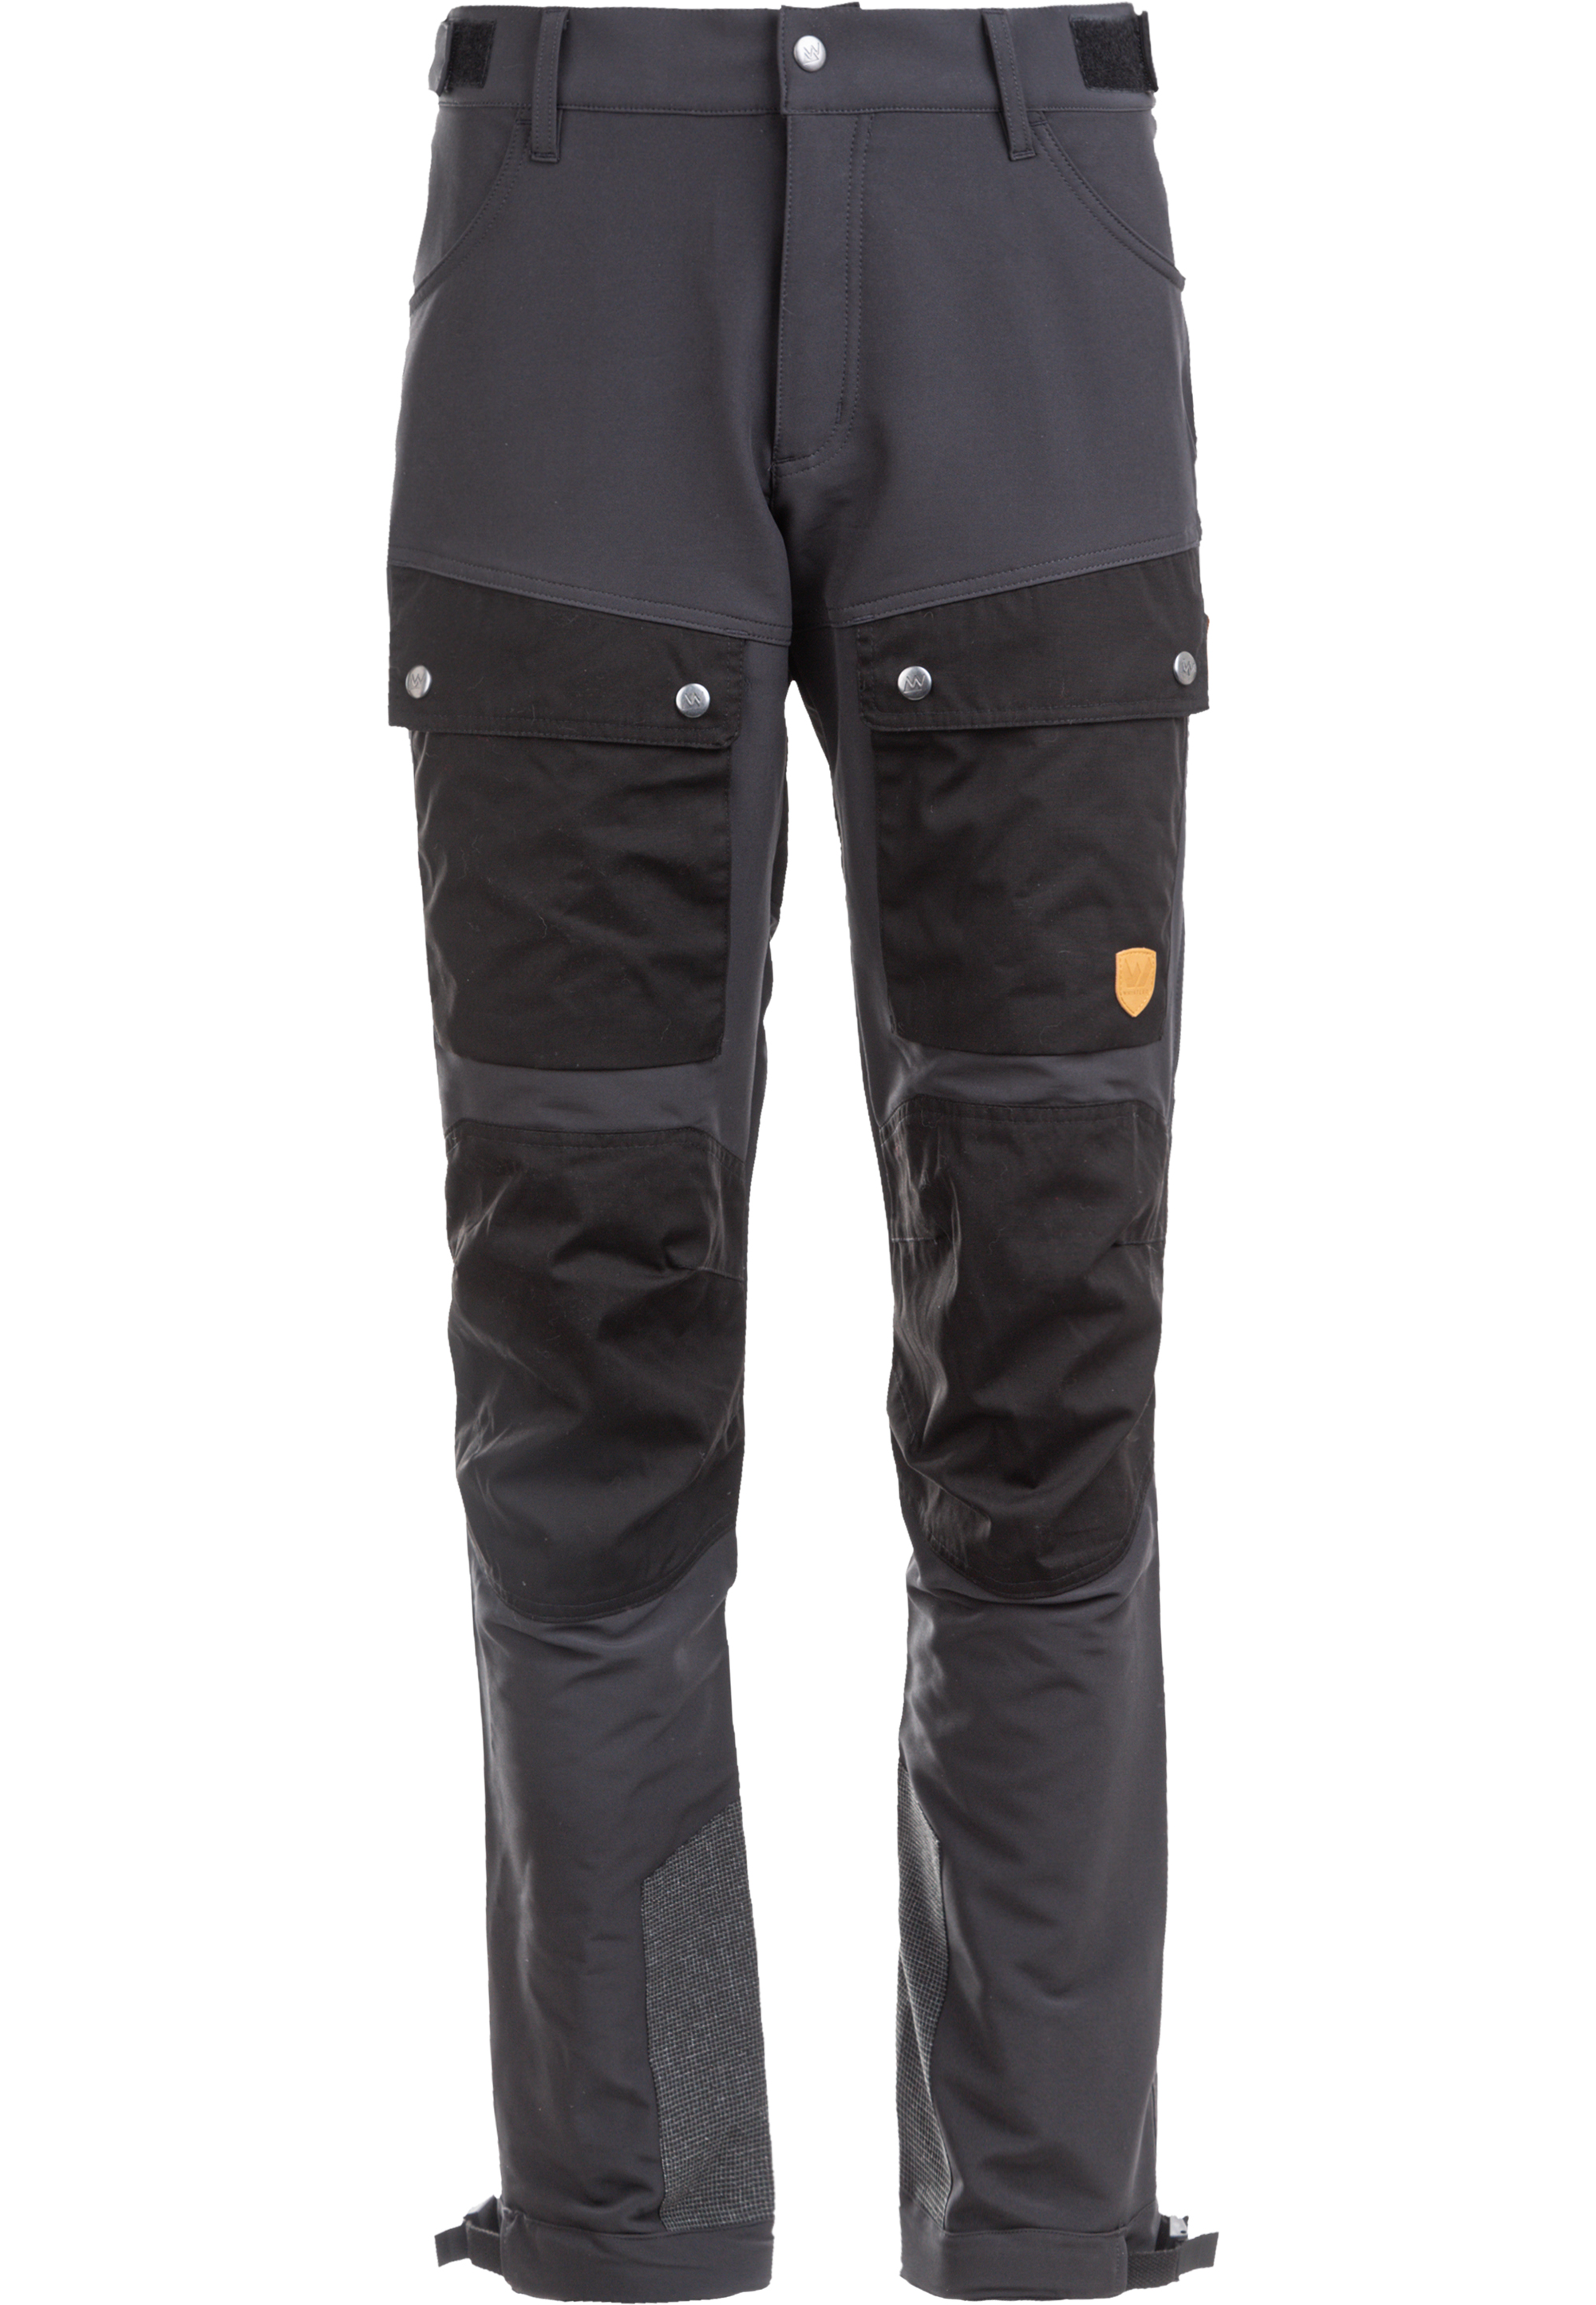 Тканевые брюки Whistler Trekking BEINA M, цвет 1051 Asphalt